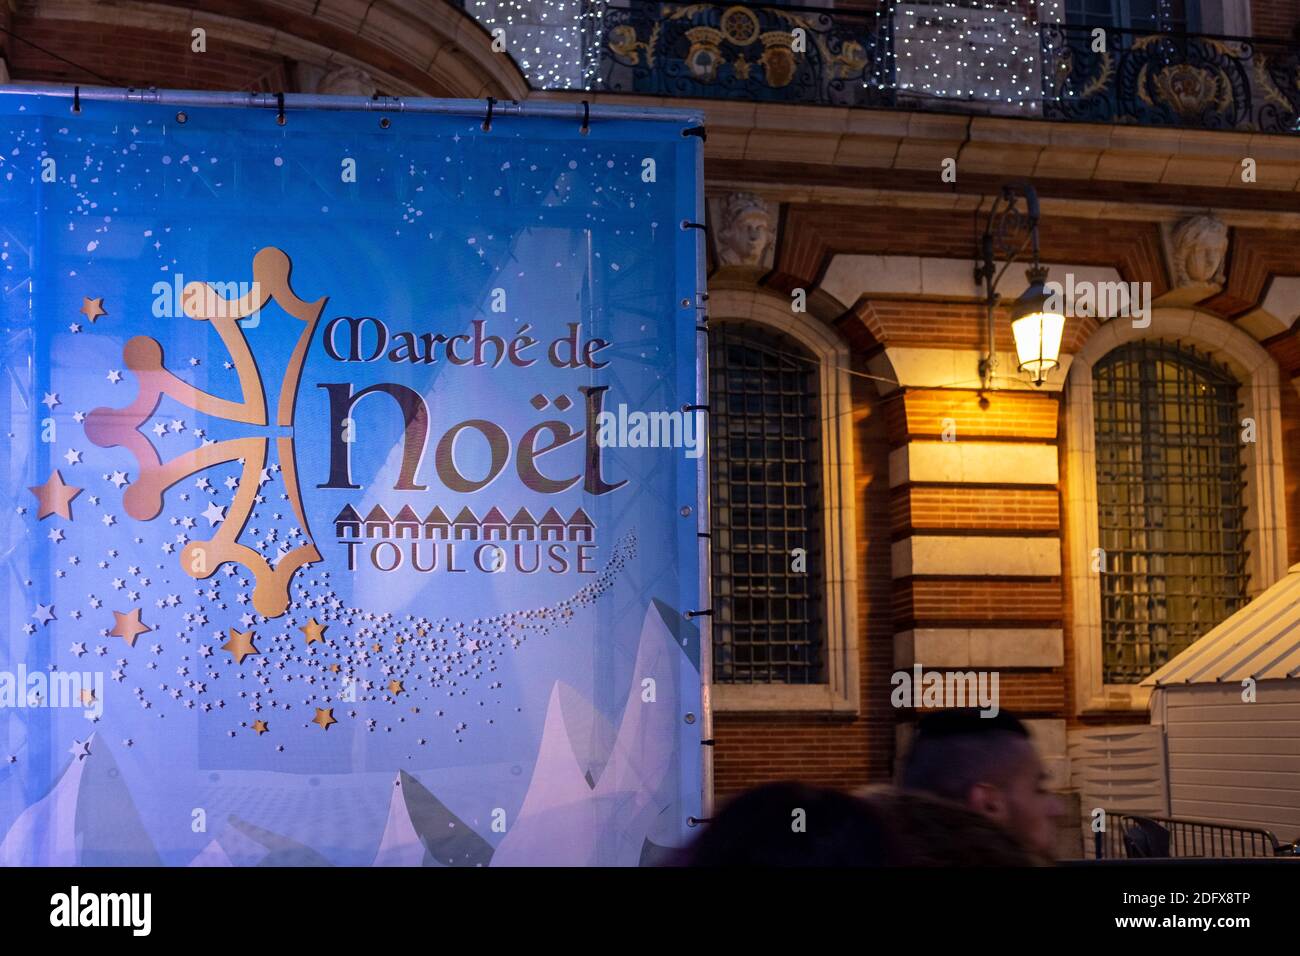 A la fin de l'année, le marché traditionnel de Noël de Toulouse (France) est situé sur la place du Capitole. Après l'attaque terroriste à Strasbourg, le système de sécurité est renforcé : perquisitions de sacs à l'entrée, blocs anti-intrusion de véhicules, patrouilles de l'armée (dispositif de Vigipirate) et officiers de police. Photo de Patrick Batard/ABACAPRESS.COM Banque D'Images